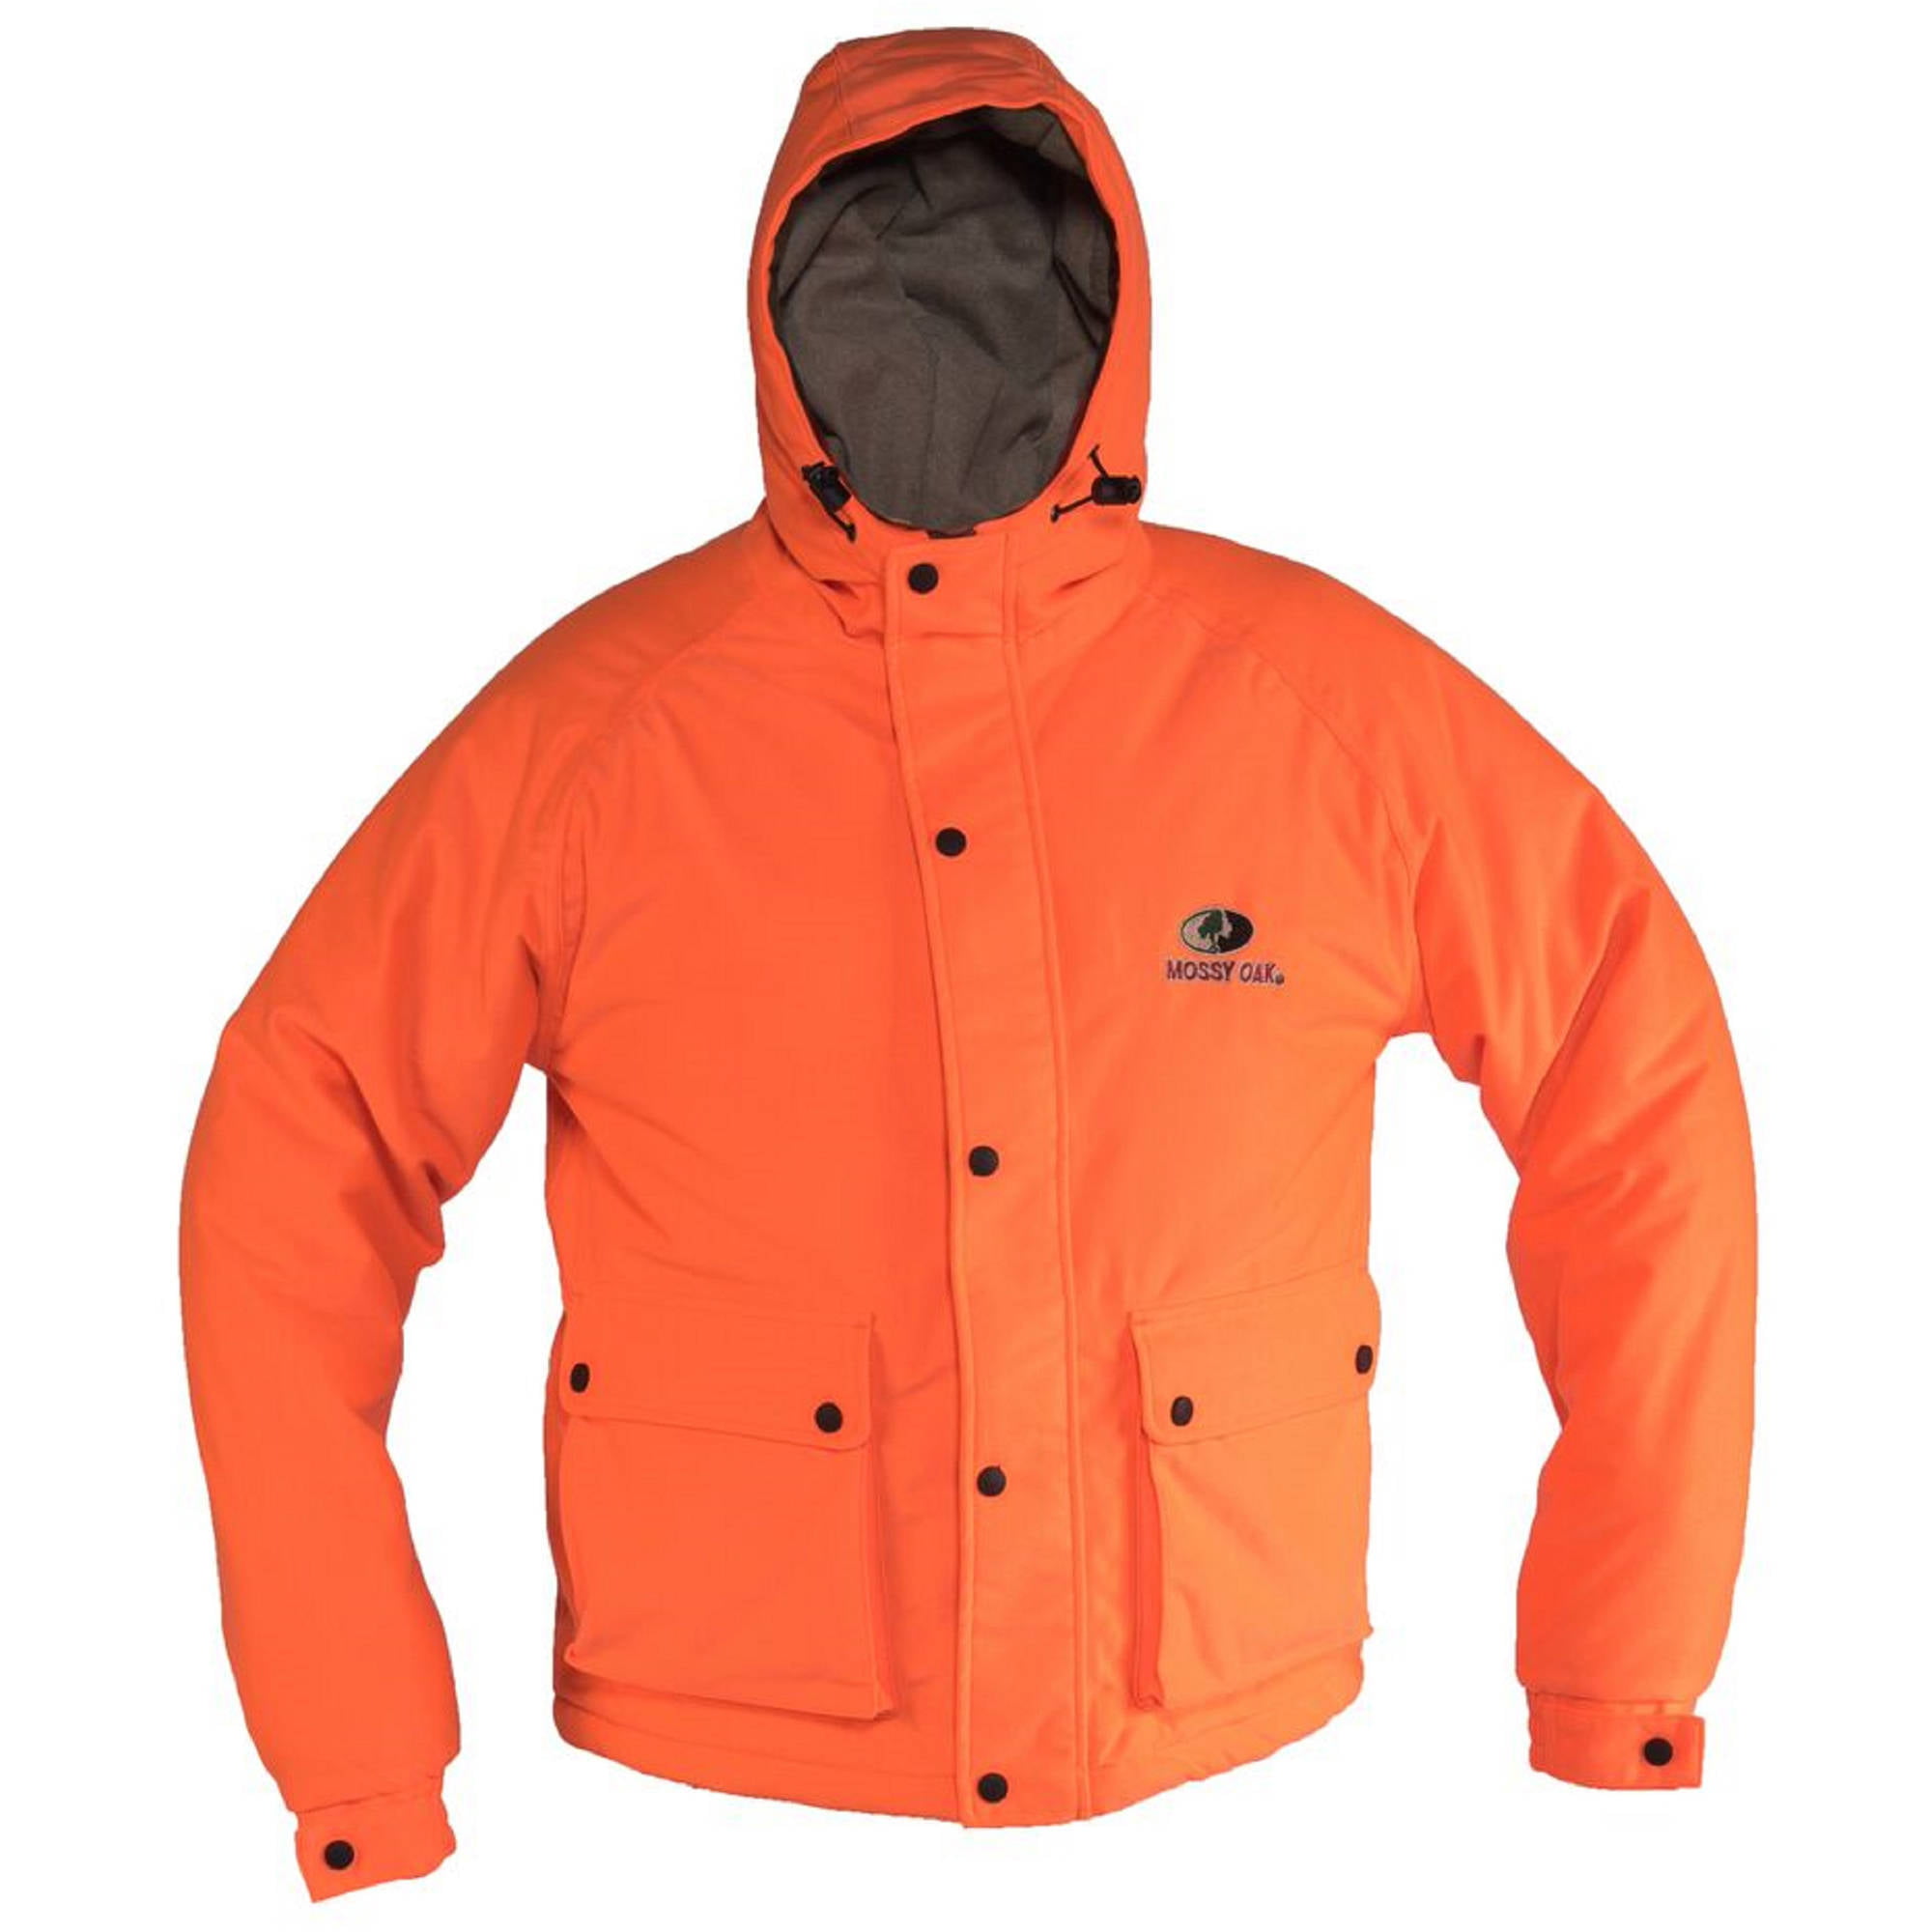 Mossy Oak - Mossy Oak Blaze Orange Men's Insulated Jacket - Walmart.com ...